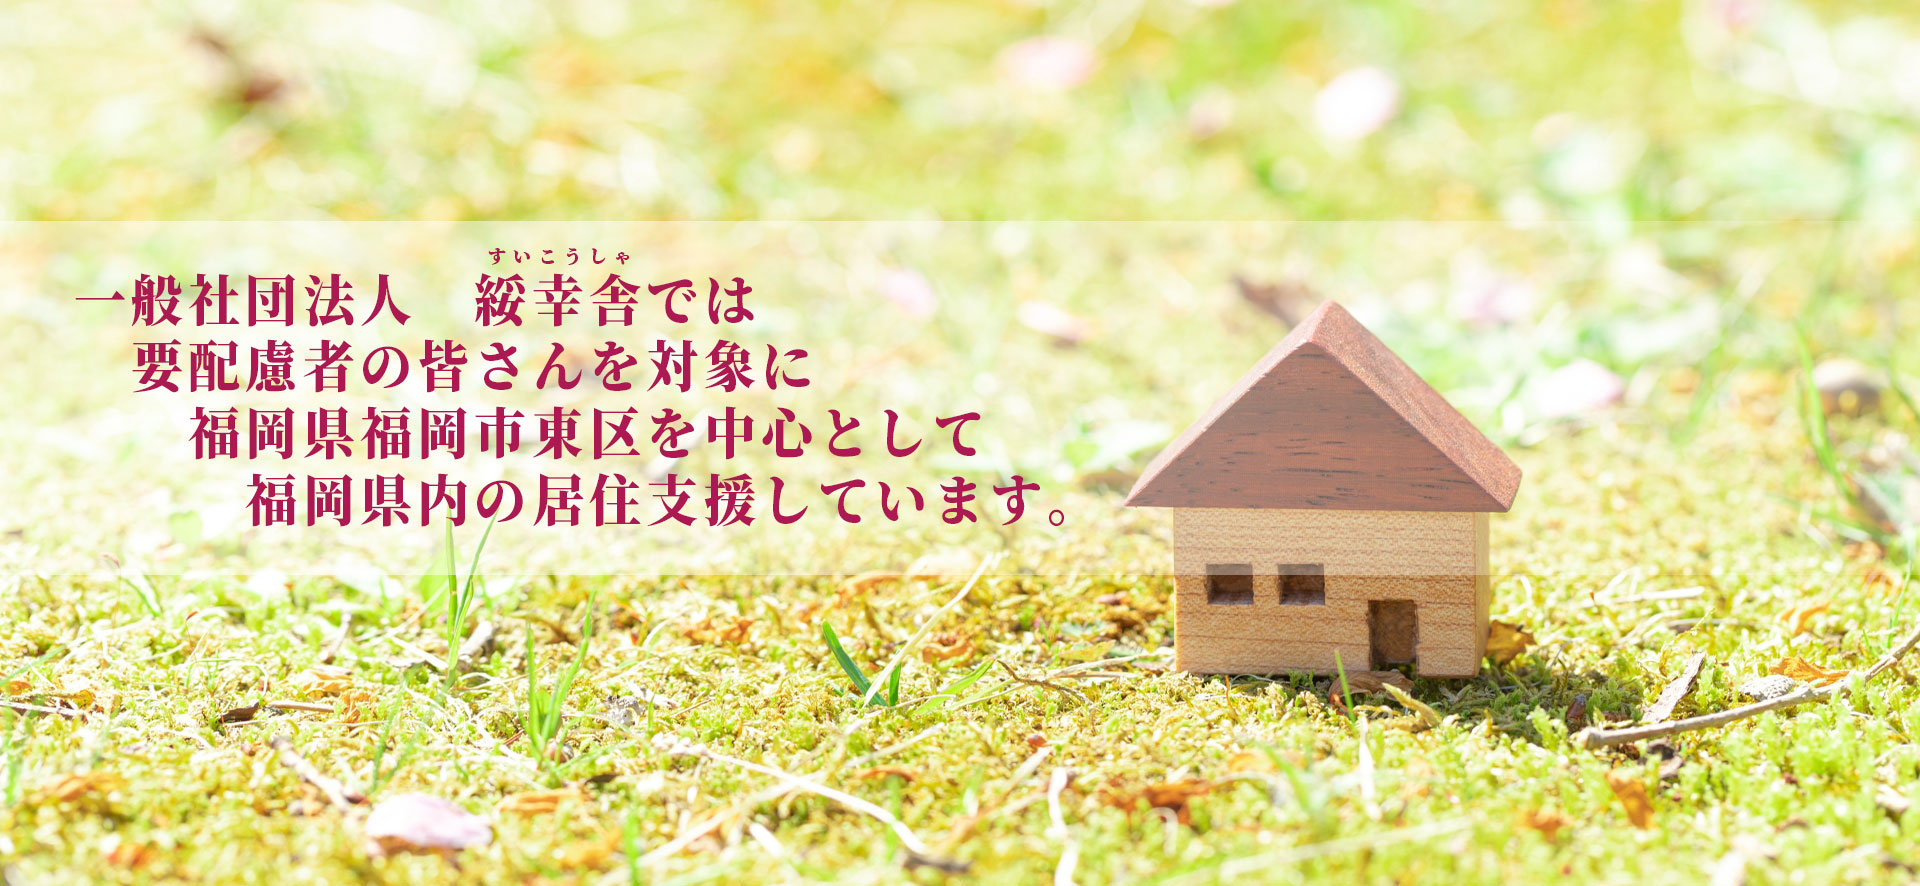 福岡県福岡市東区を中心に福岡県内の居住支援しています、一般社団法人 綏幸舎です。